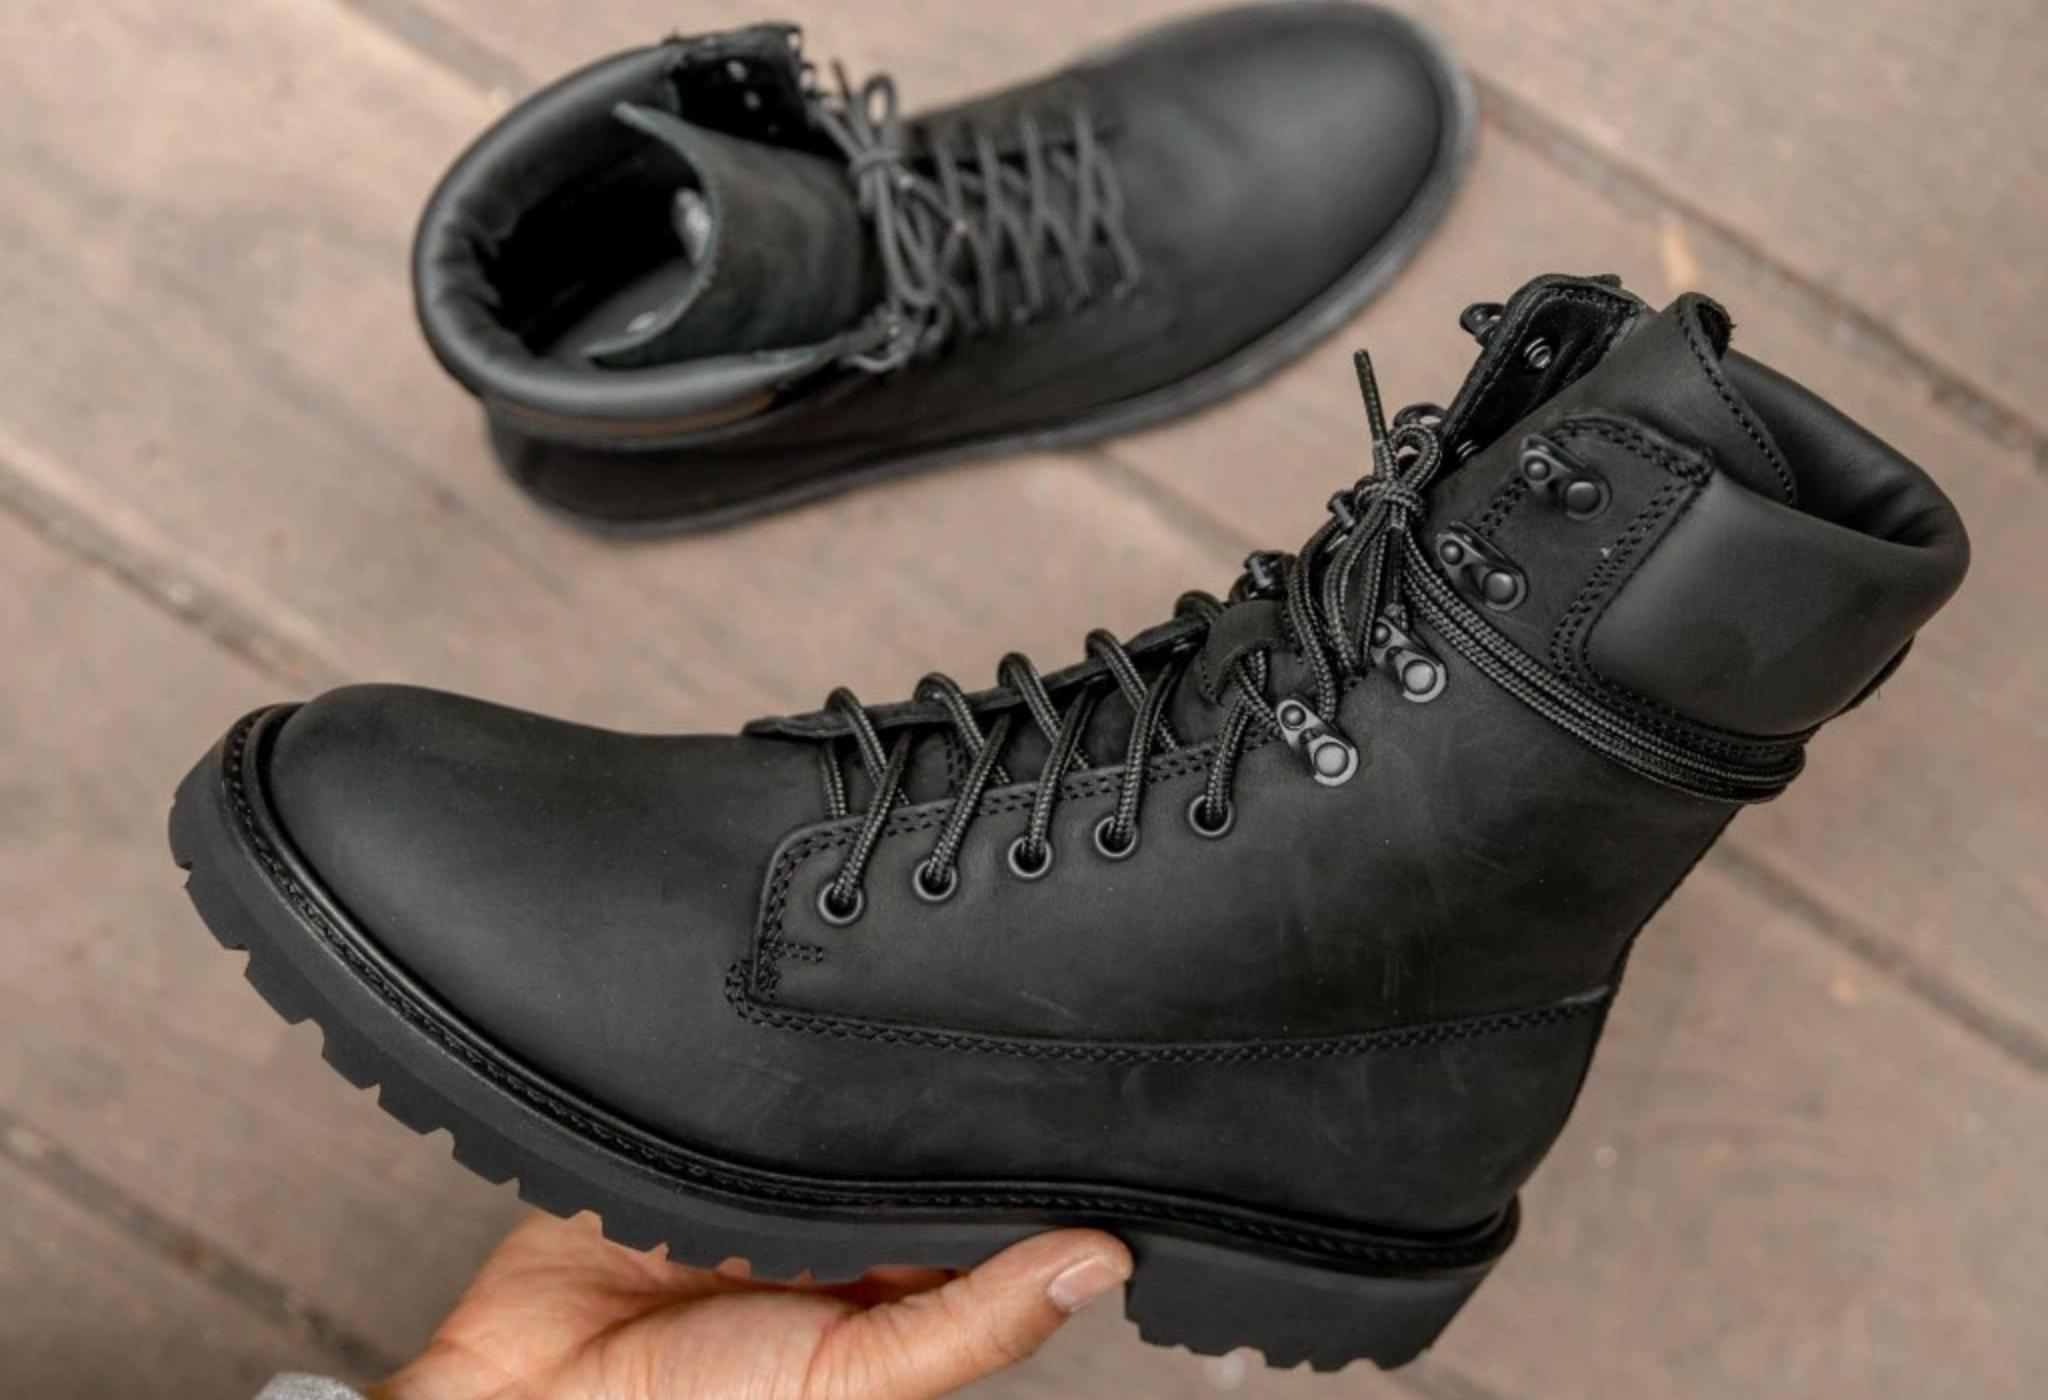 американские армейские ботинки - идеальный повседневный стиль обуви для осени и зимы.